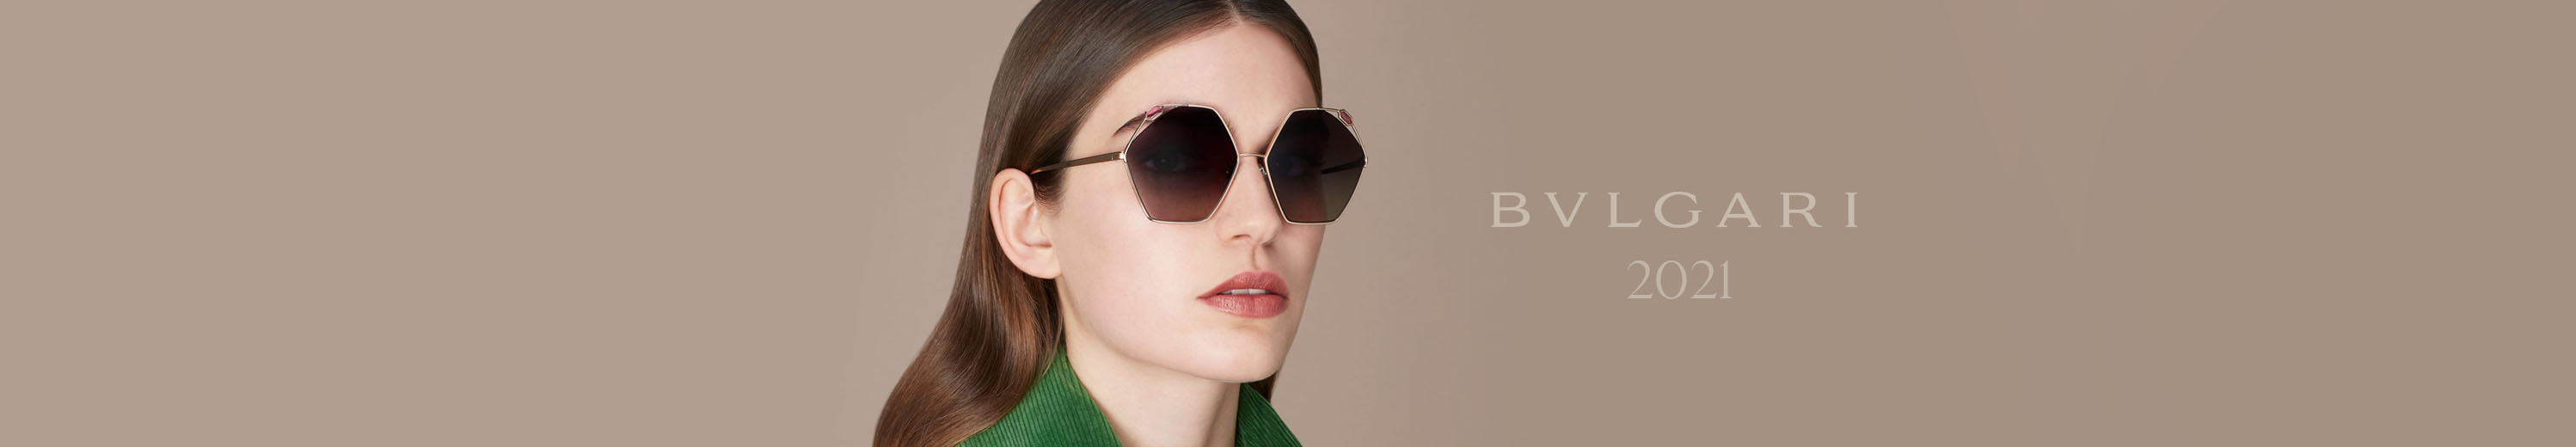 Bvlgari 2021 Spring / Summer Eyewear Collection